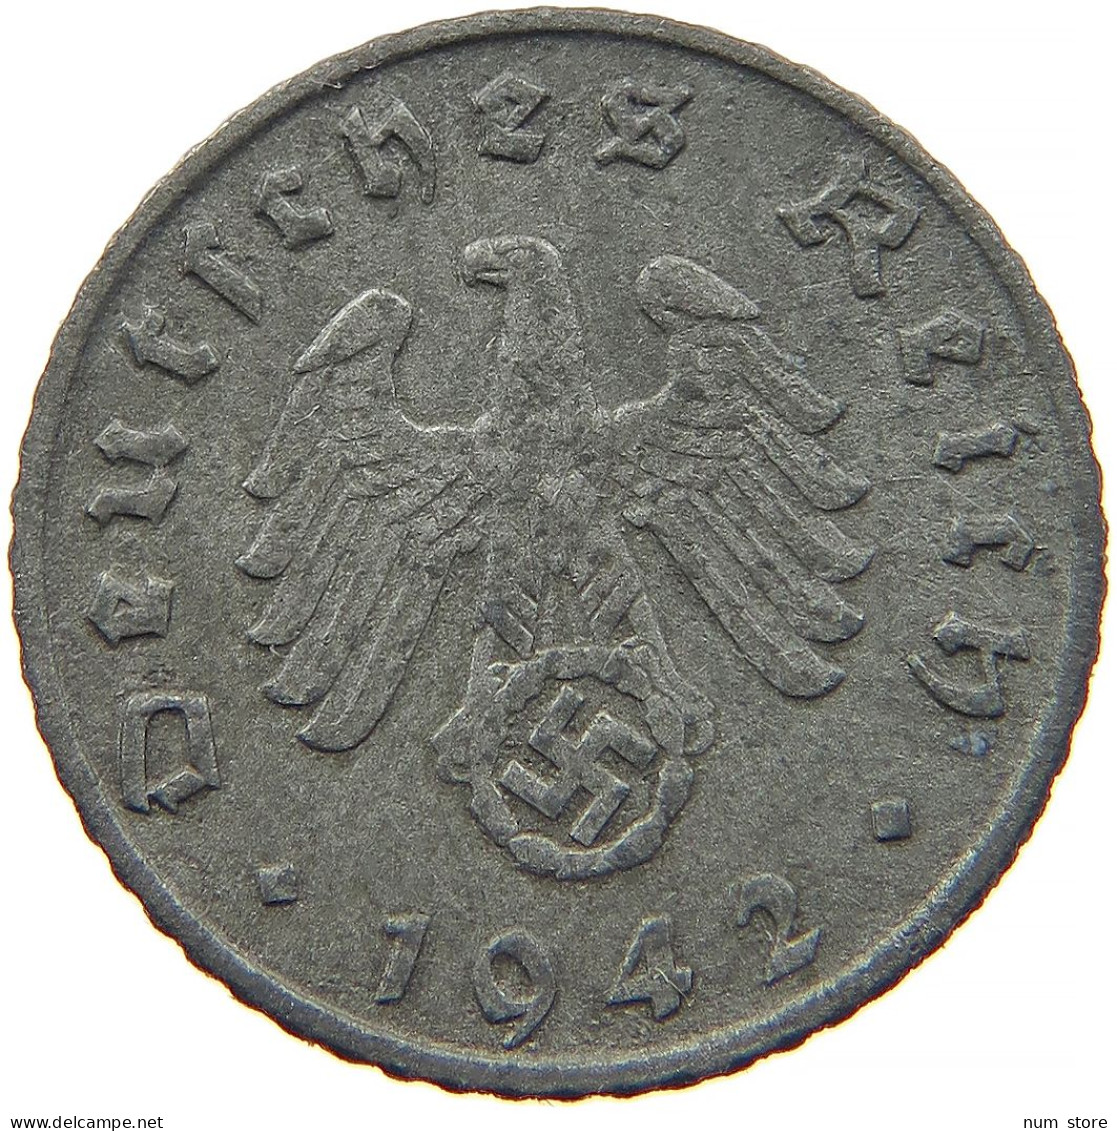 GERMANY 5 REICHSPFENNIG 1942 G #s091 0937 - 5 Reichspfennig